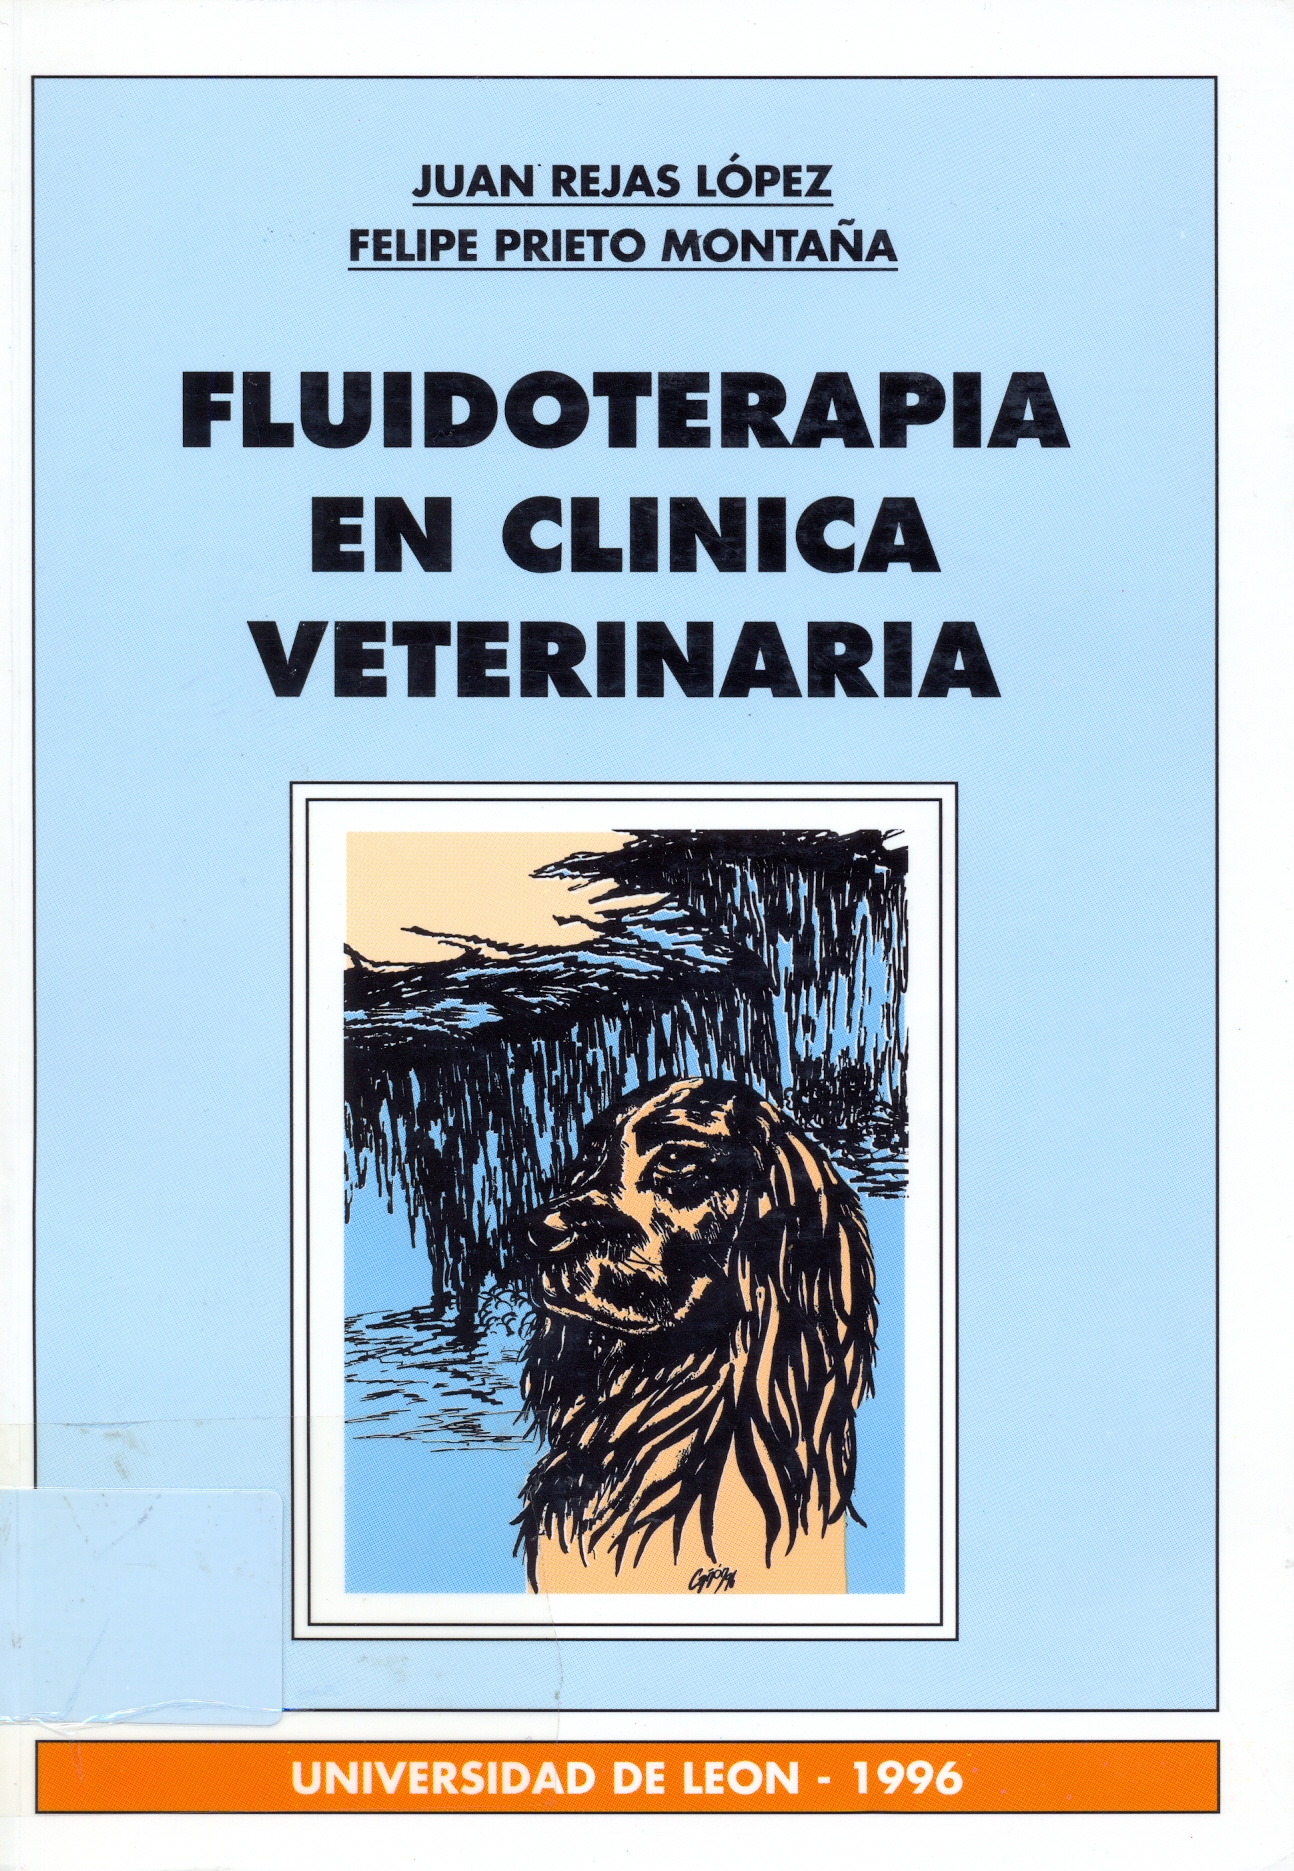 Imagen de portada del libro Fluidoterapia en clínica veterinaria